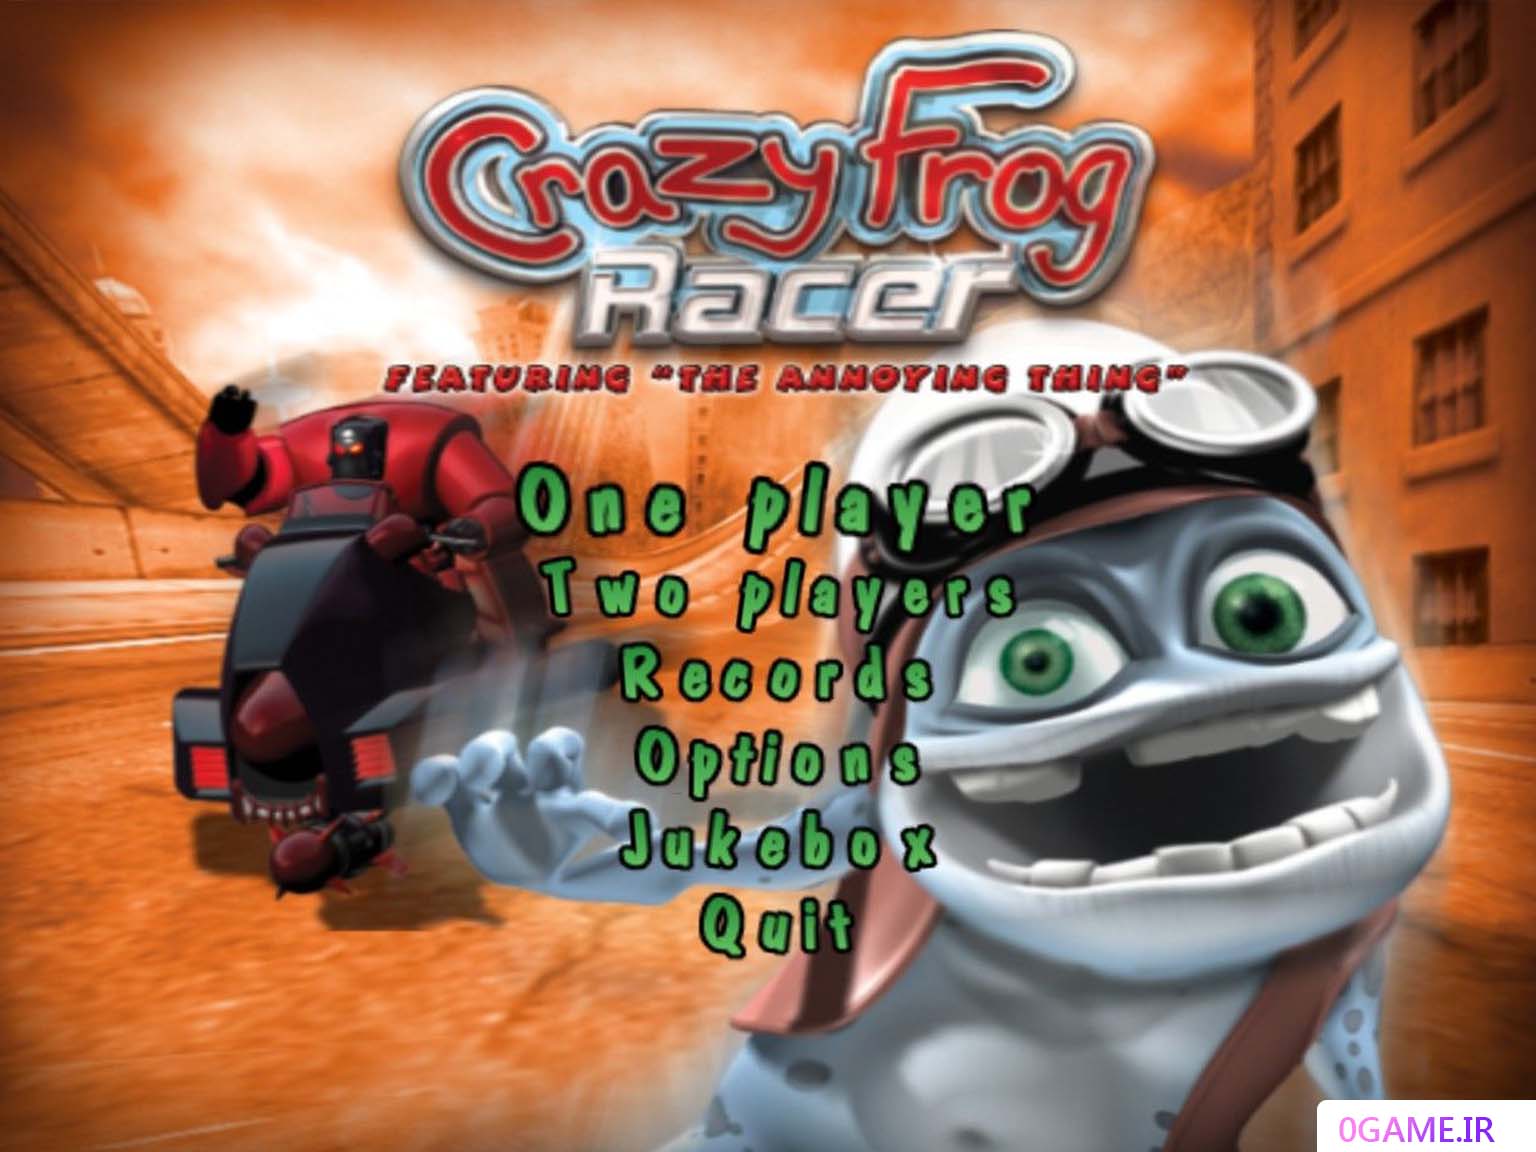 دانلود بازی قورباغه دیوانه (Crazy Frog Racer) نسخه کامل برای کامپیوتر